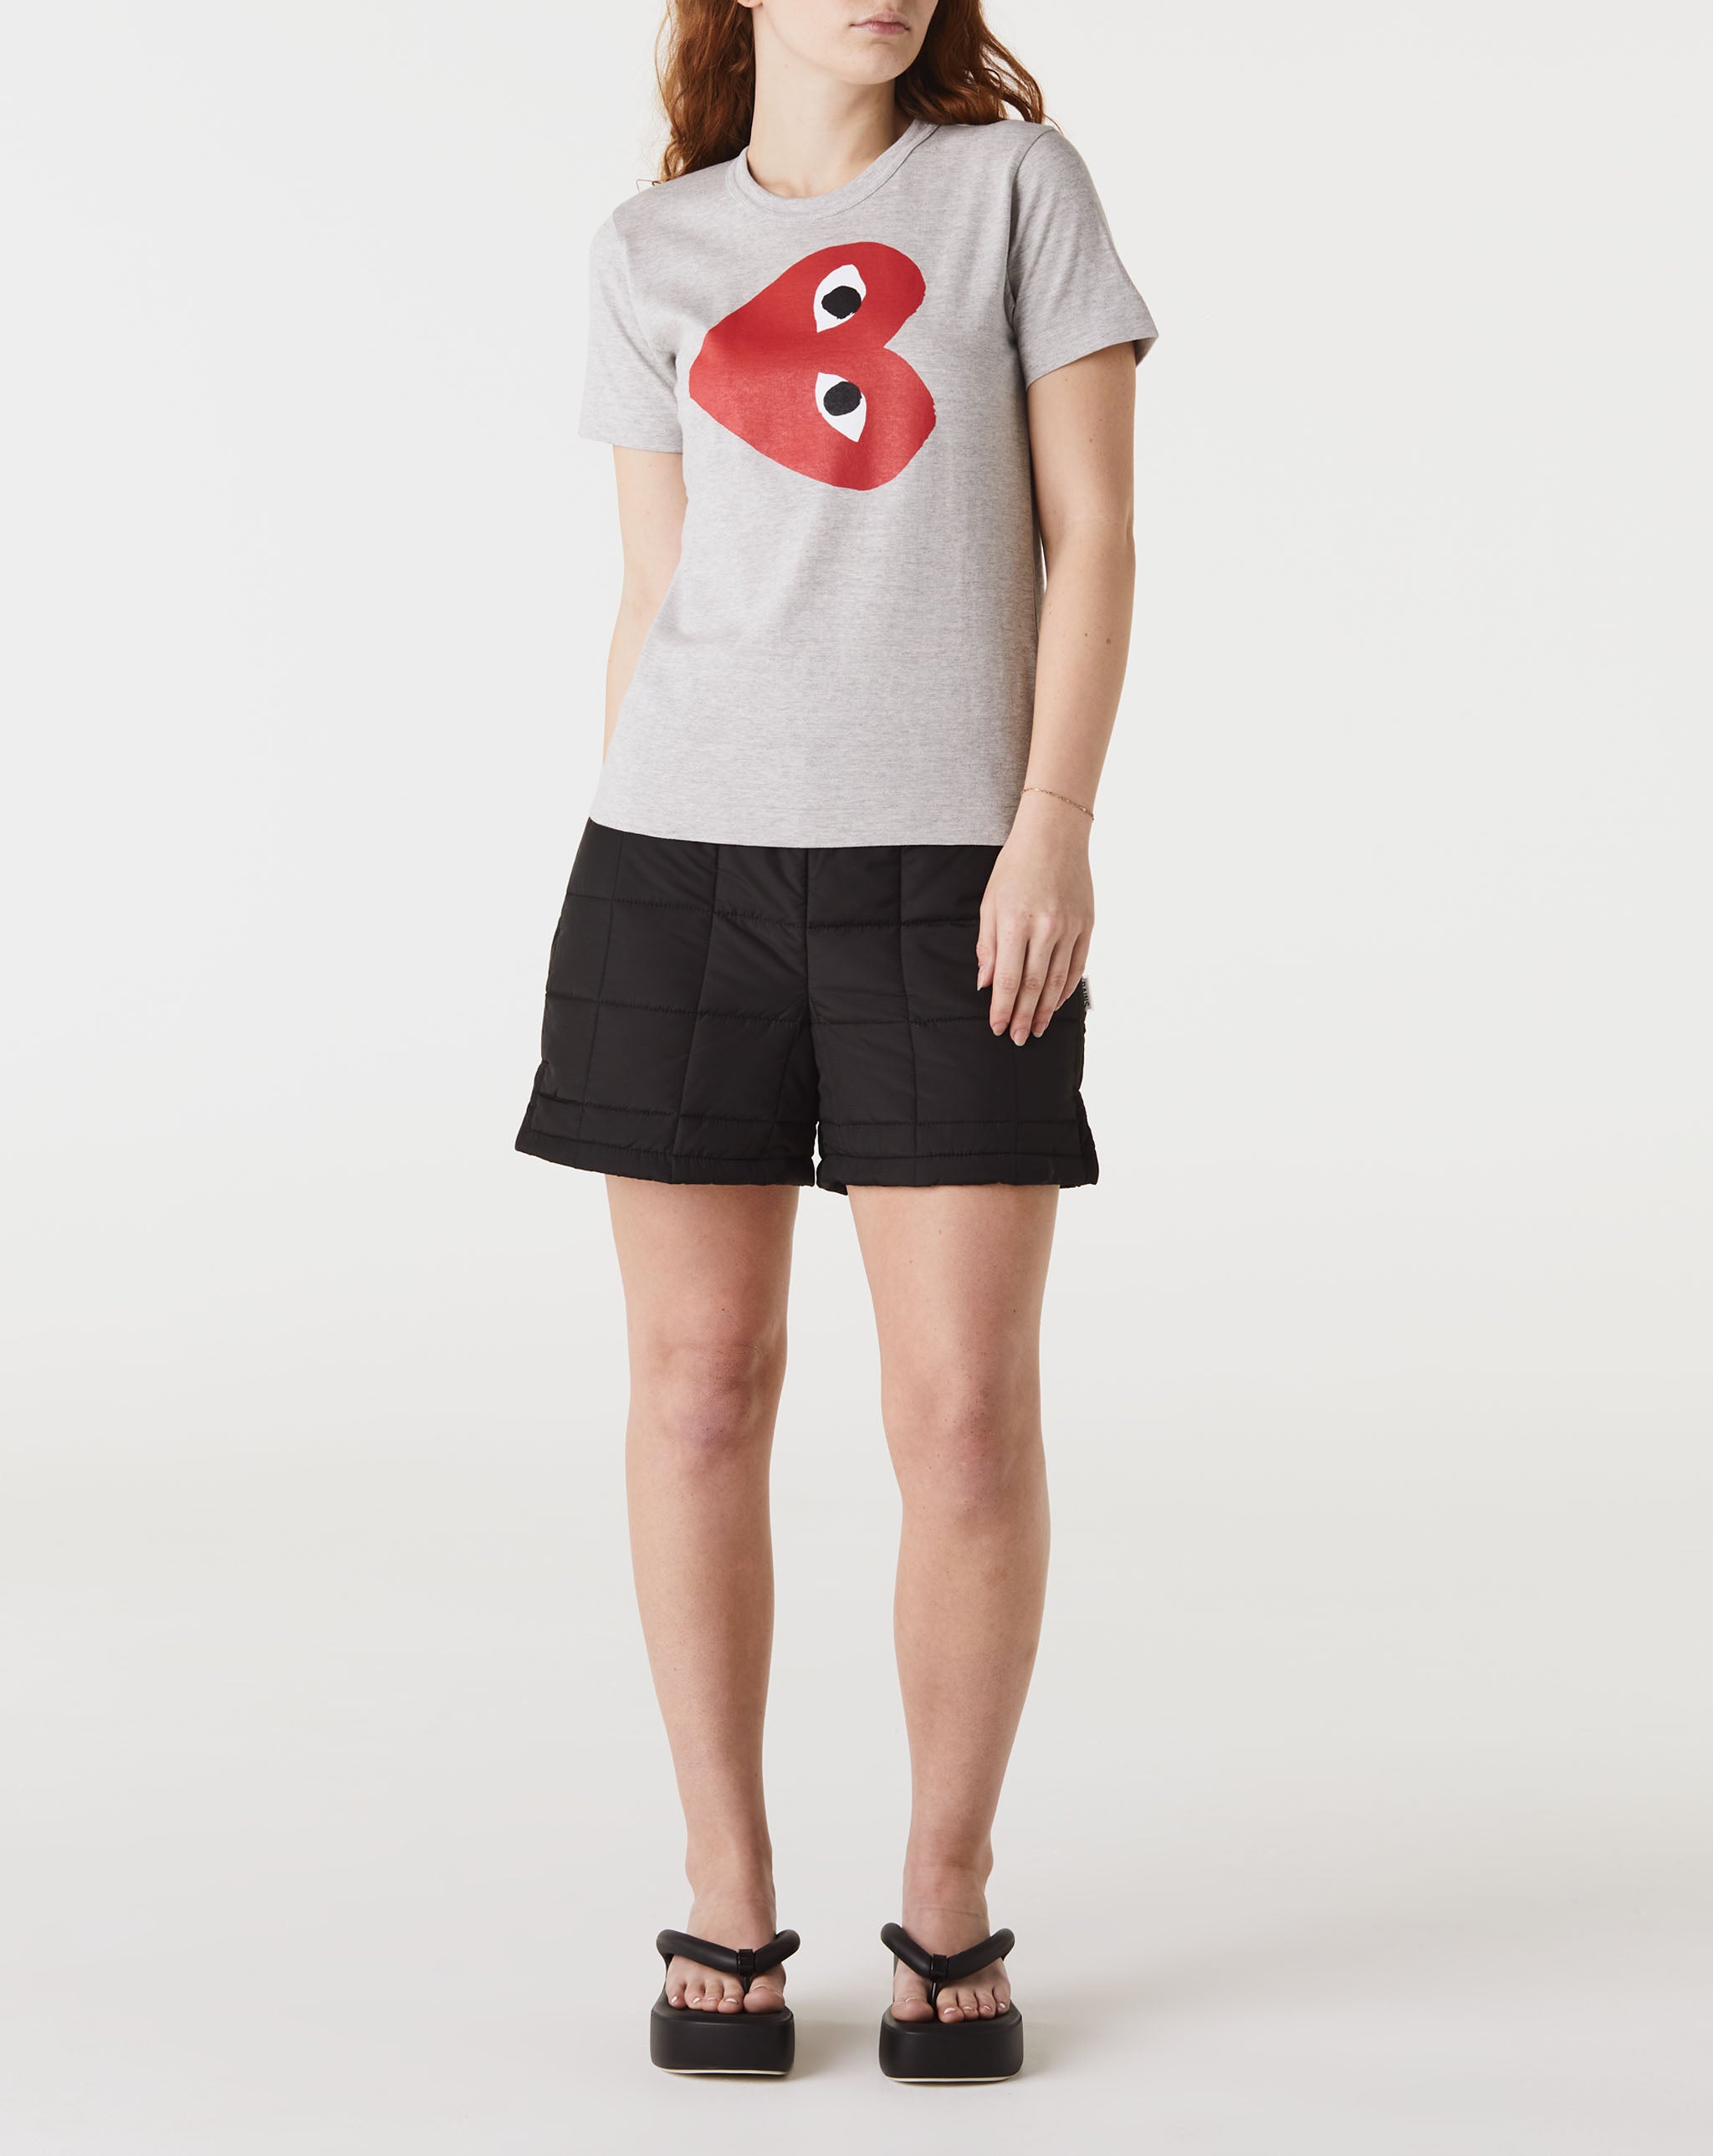 Womens Double Camo Heart T-Shirt Women's Play Logo T-Shirt  - Cheap Urlfreeze Jordan outlet